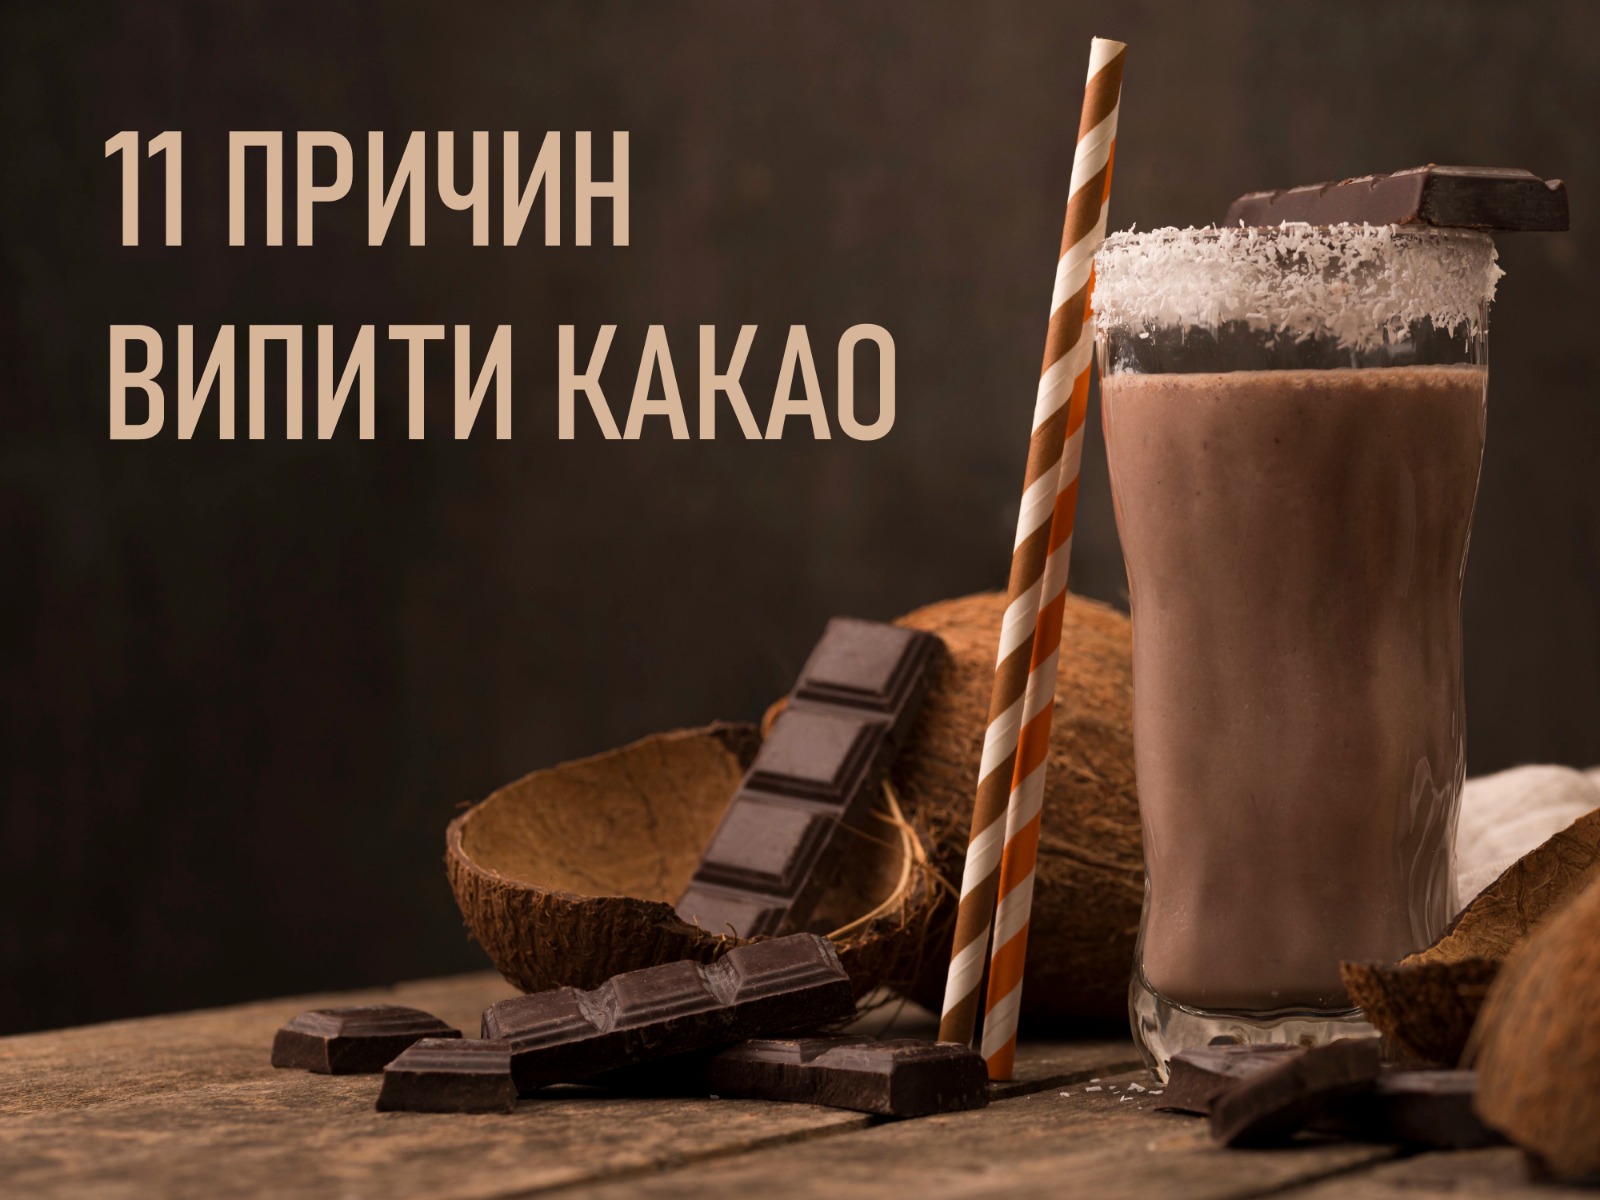 На зображенні склянка наповнена какао, поруч з нею шматки шоколаду і половина розколотого кокосу у верхній частині зображення підпис -11 причин випити какао